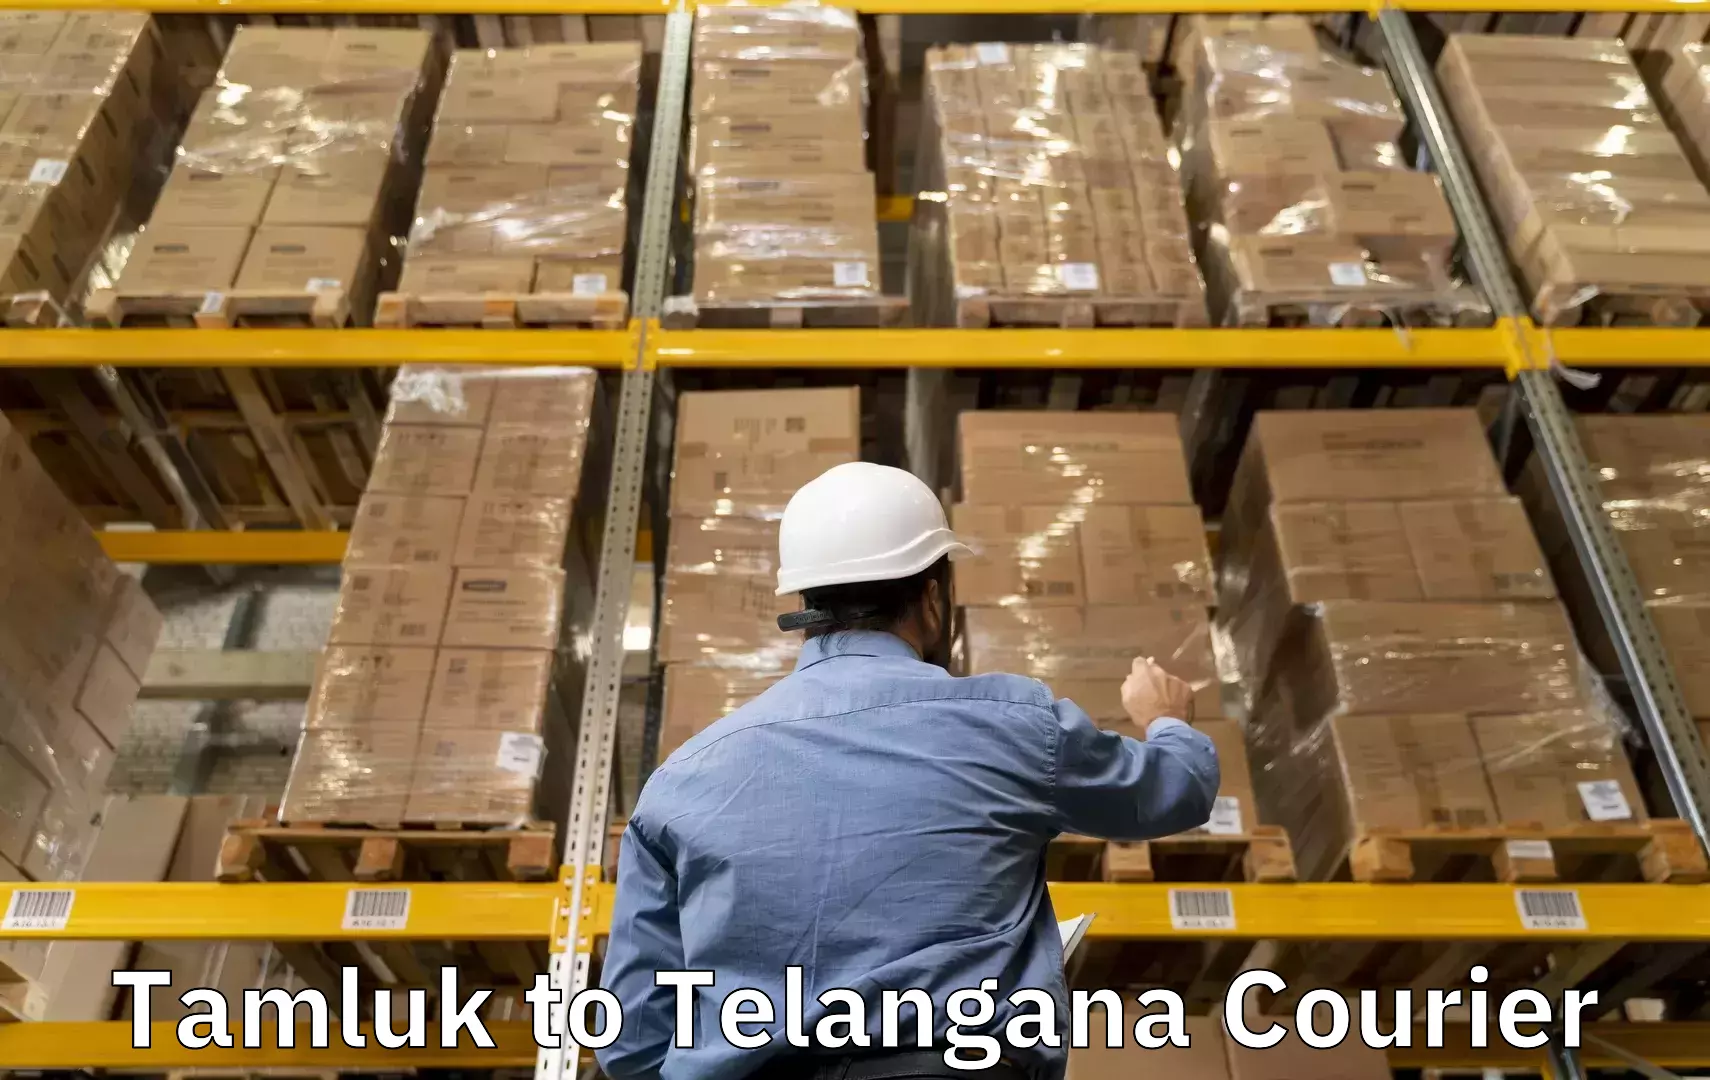 Versatile luggage courier Tamluk to Warangal